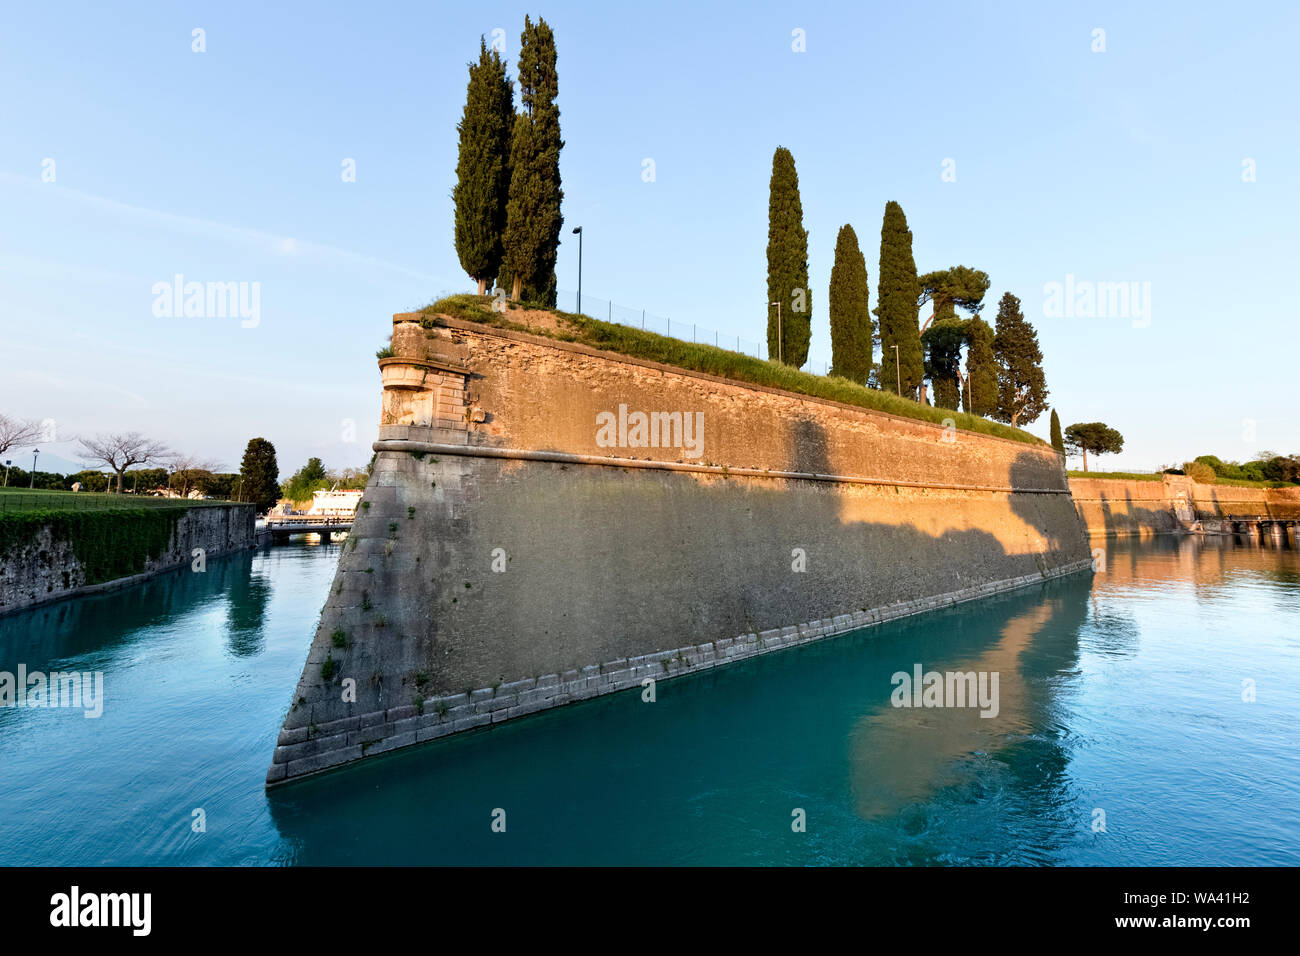 Die Festung von Peschiera del Garda von der Republik Venedig gebaut wurde: Es ist heute ein UNESCO Weltkulturerbe. In der Provinz Verona, Venetien, Italien. Stockfoto